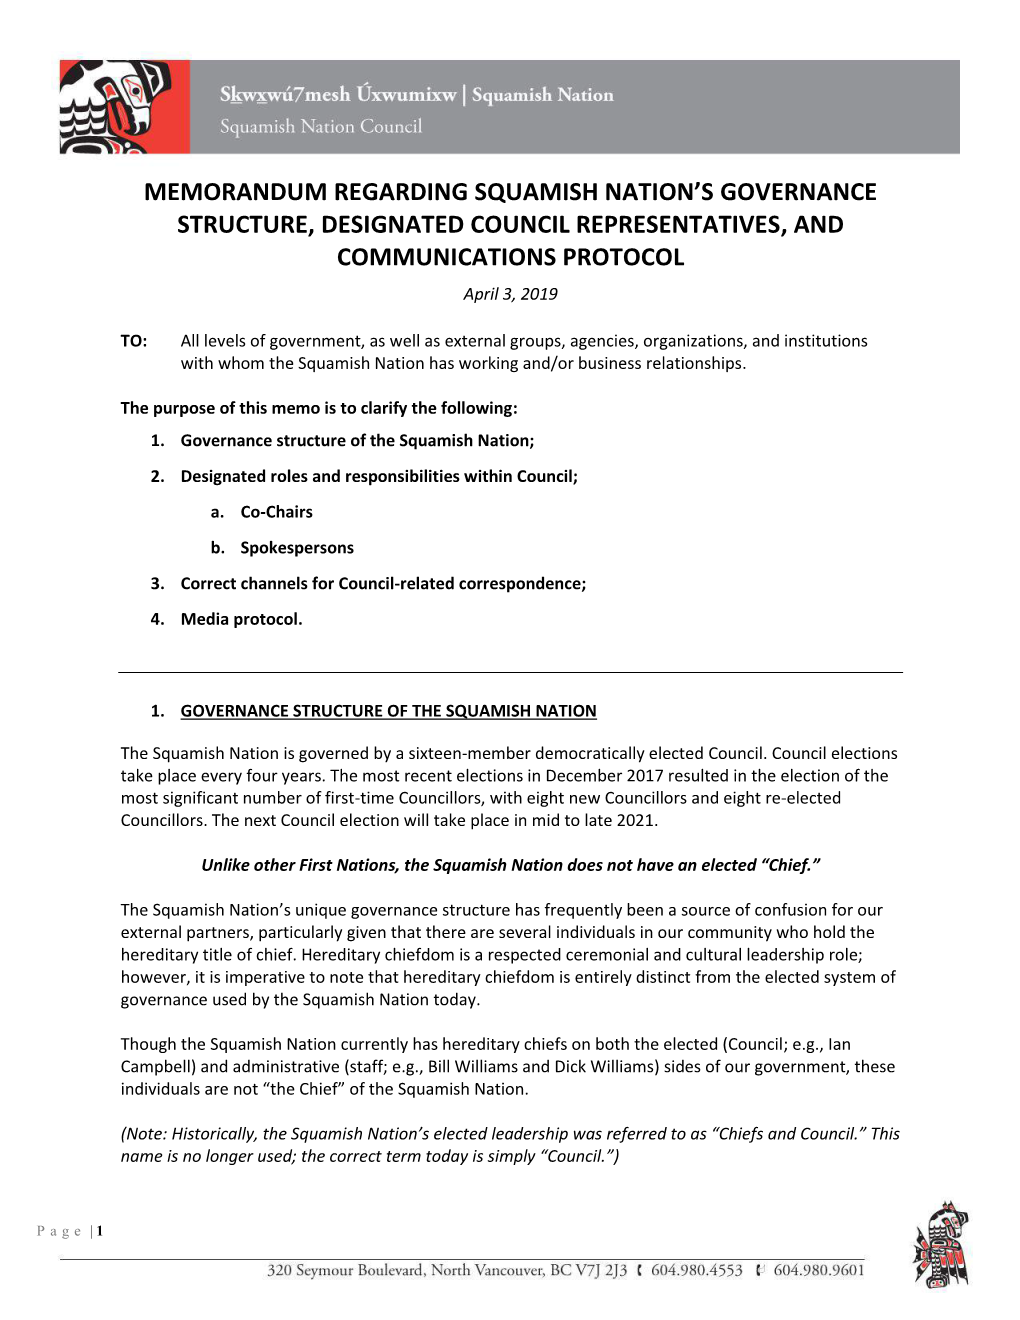 Memorandum Regarding Squamish Nation's